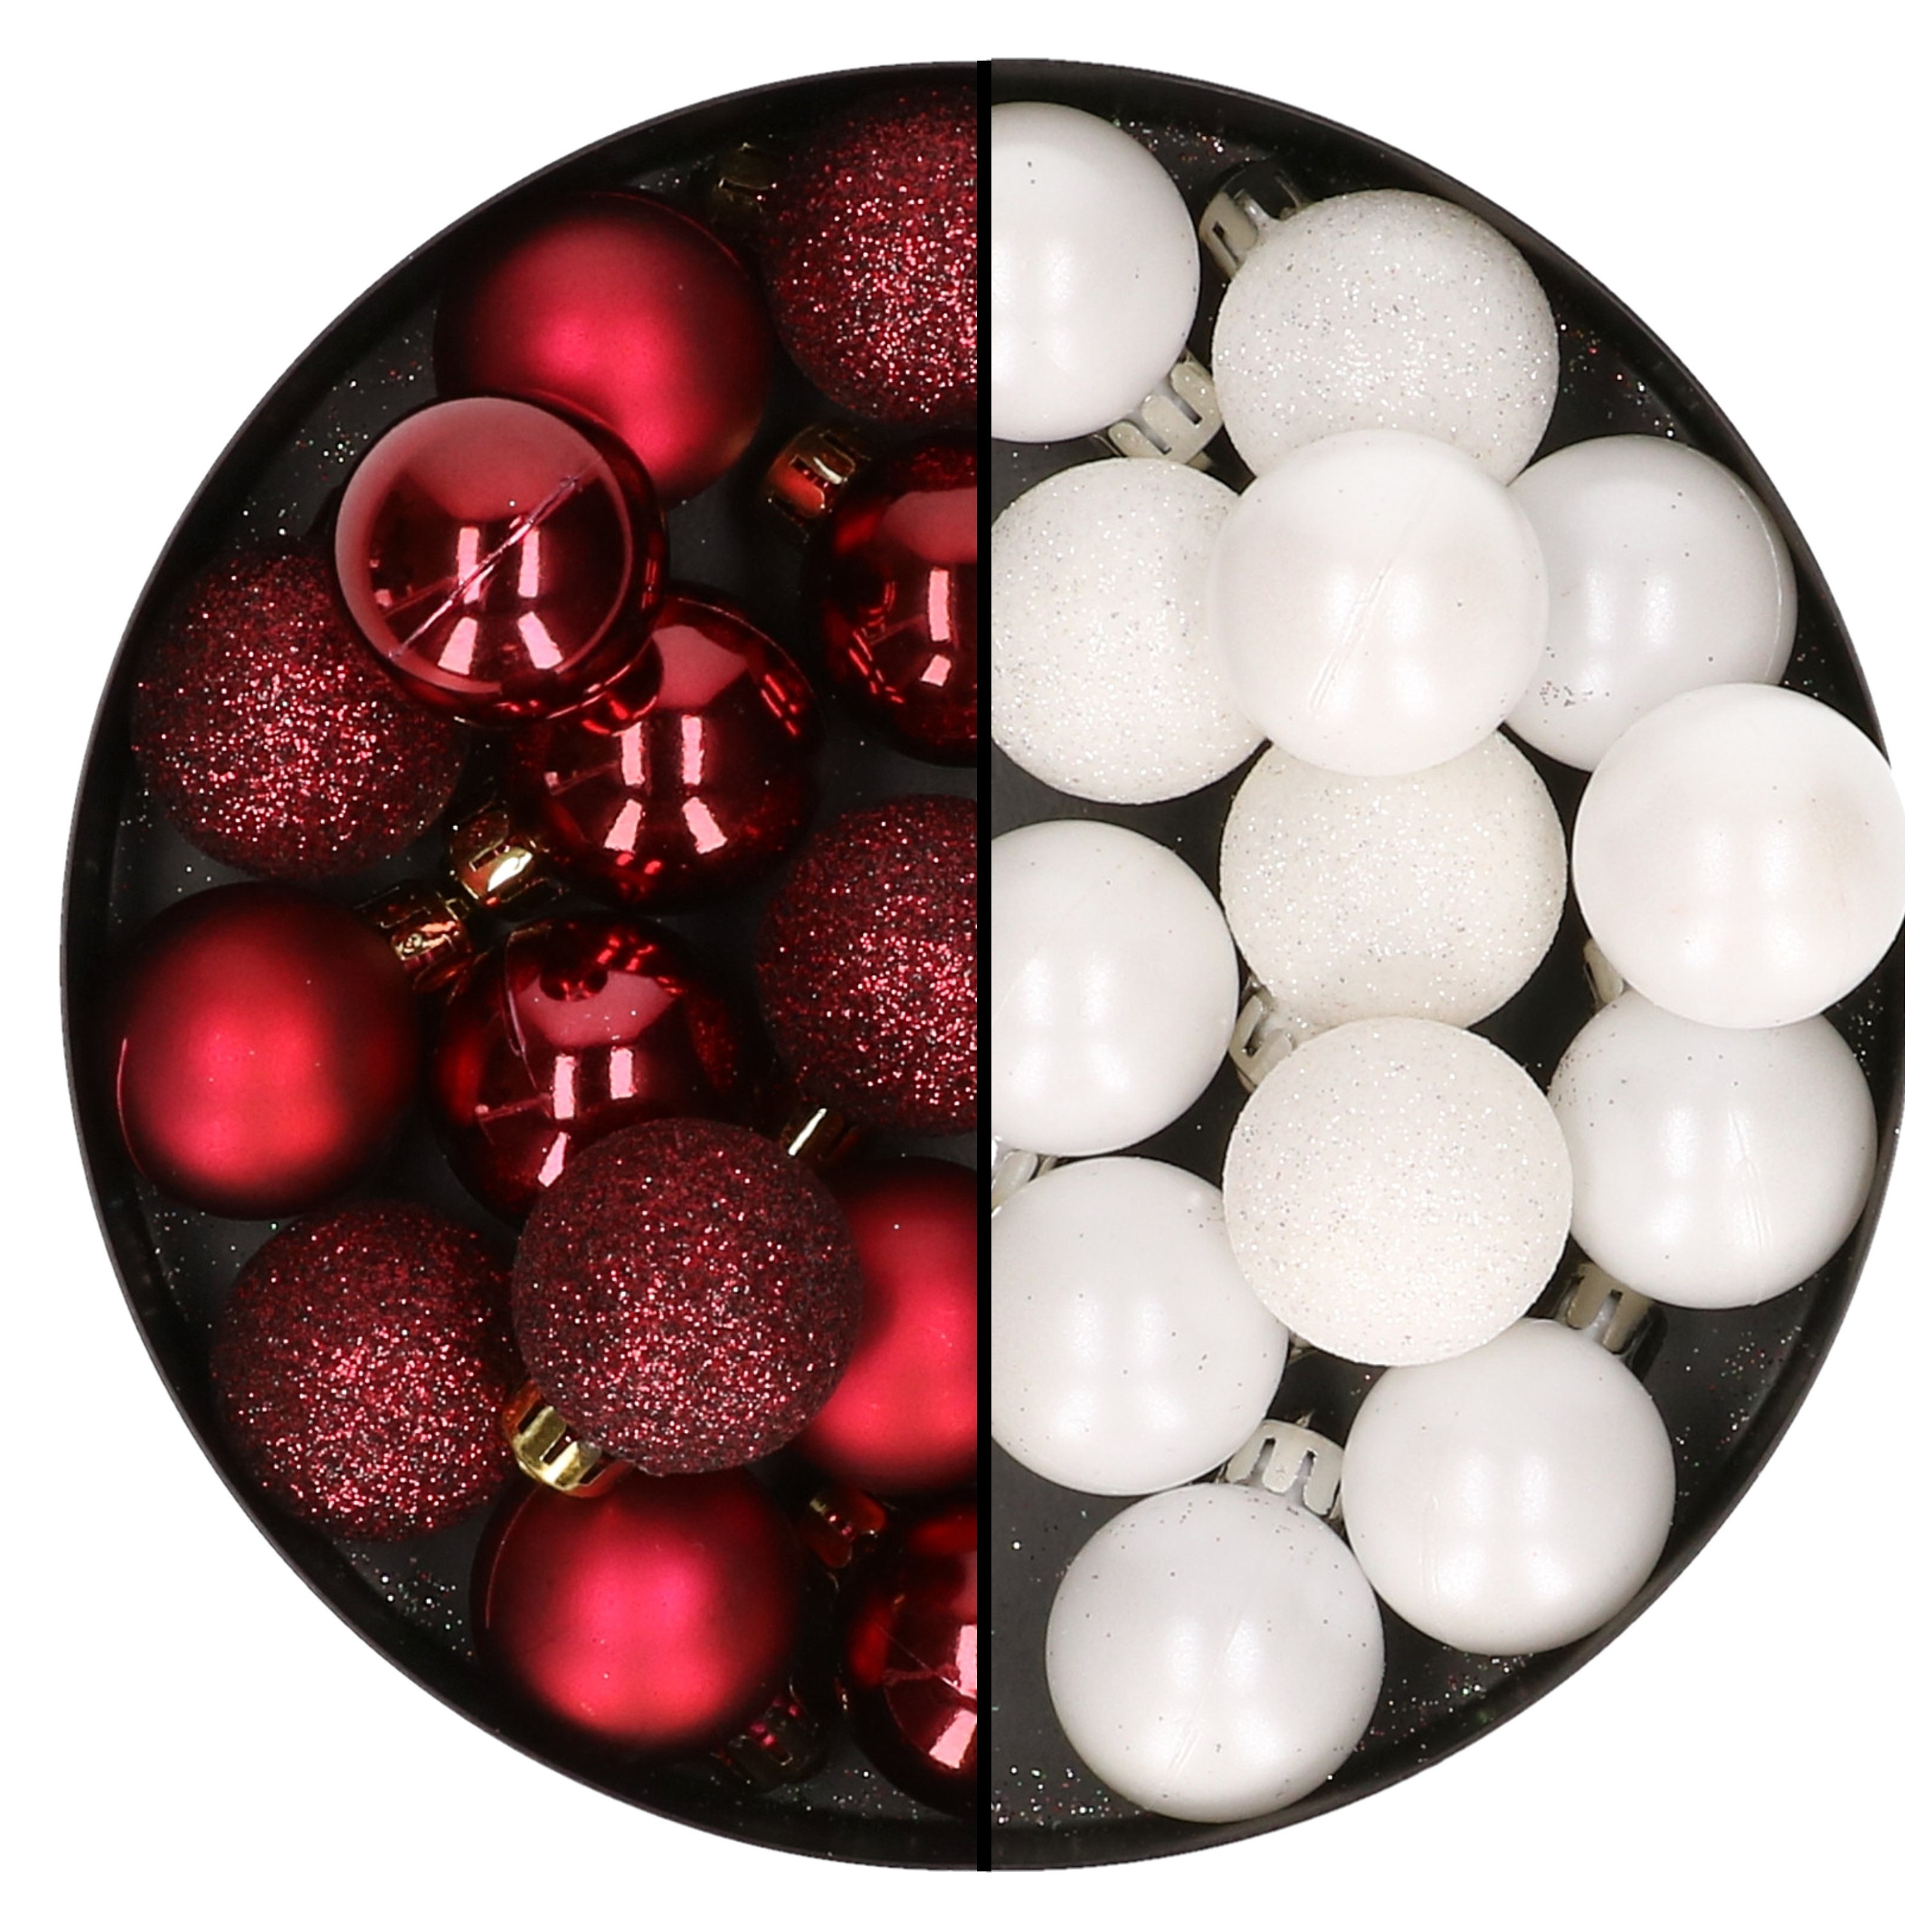 28x stuks kleine kunststof kerstballen wit en bordeaux rood 3 cm